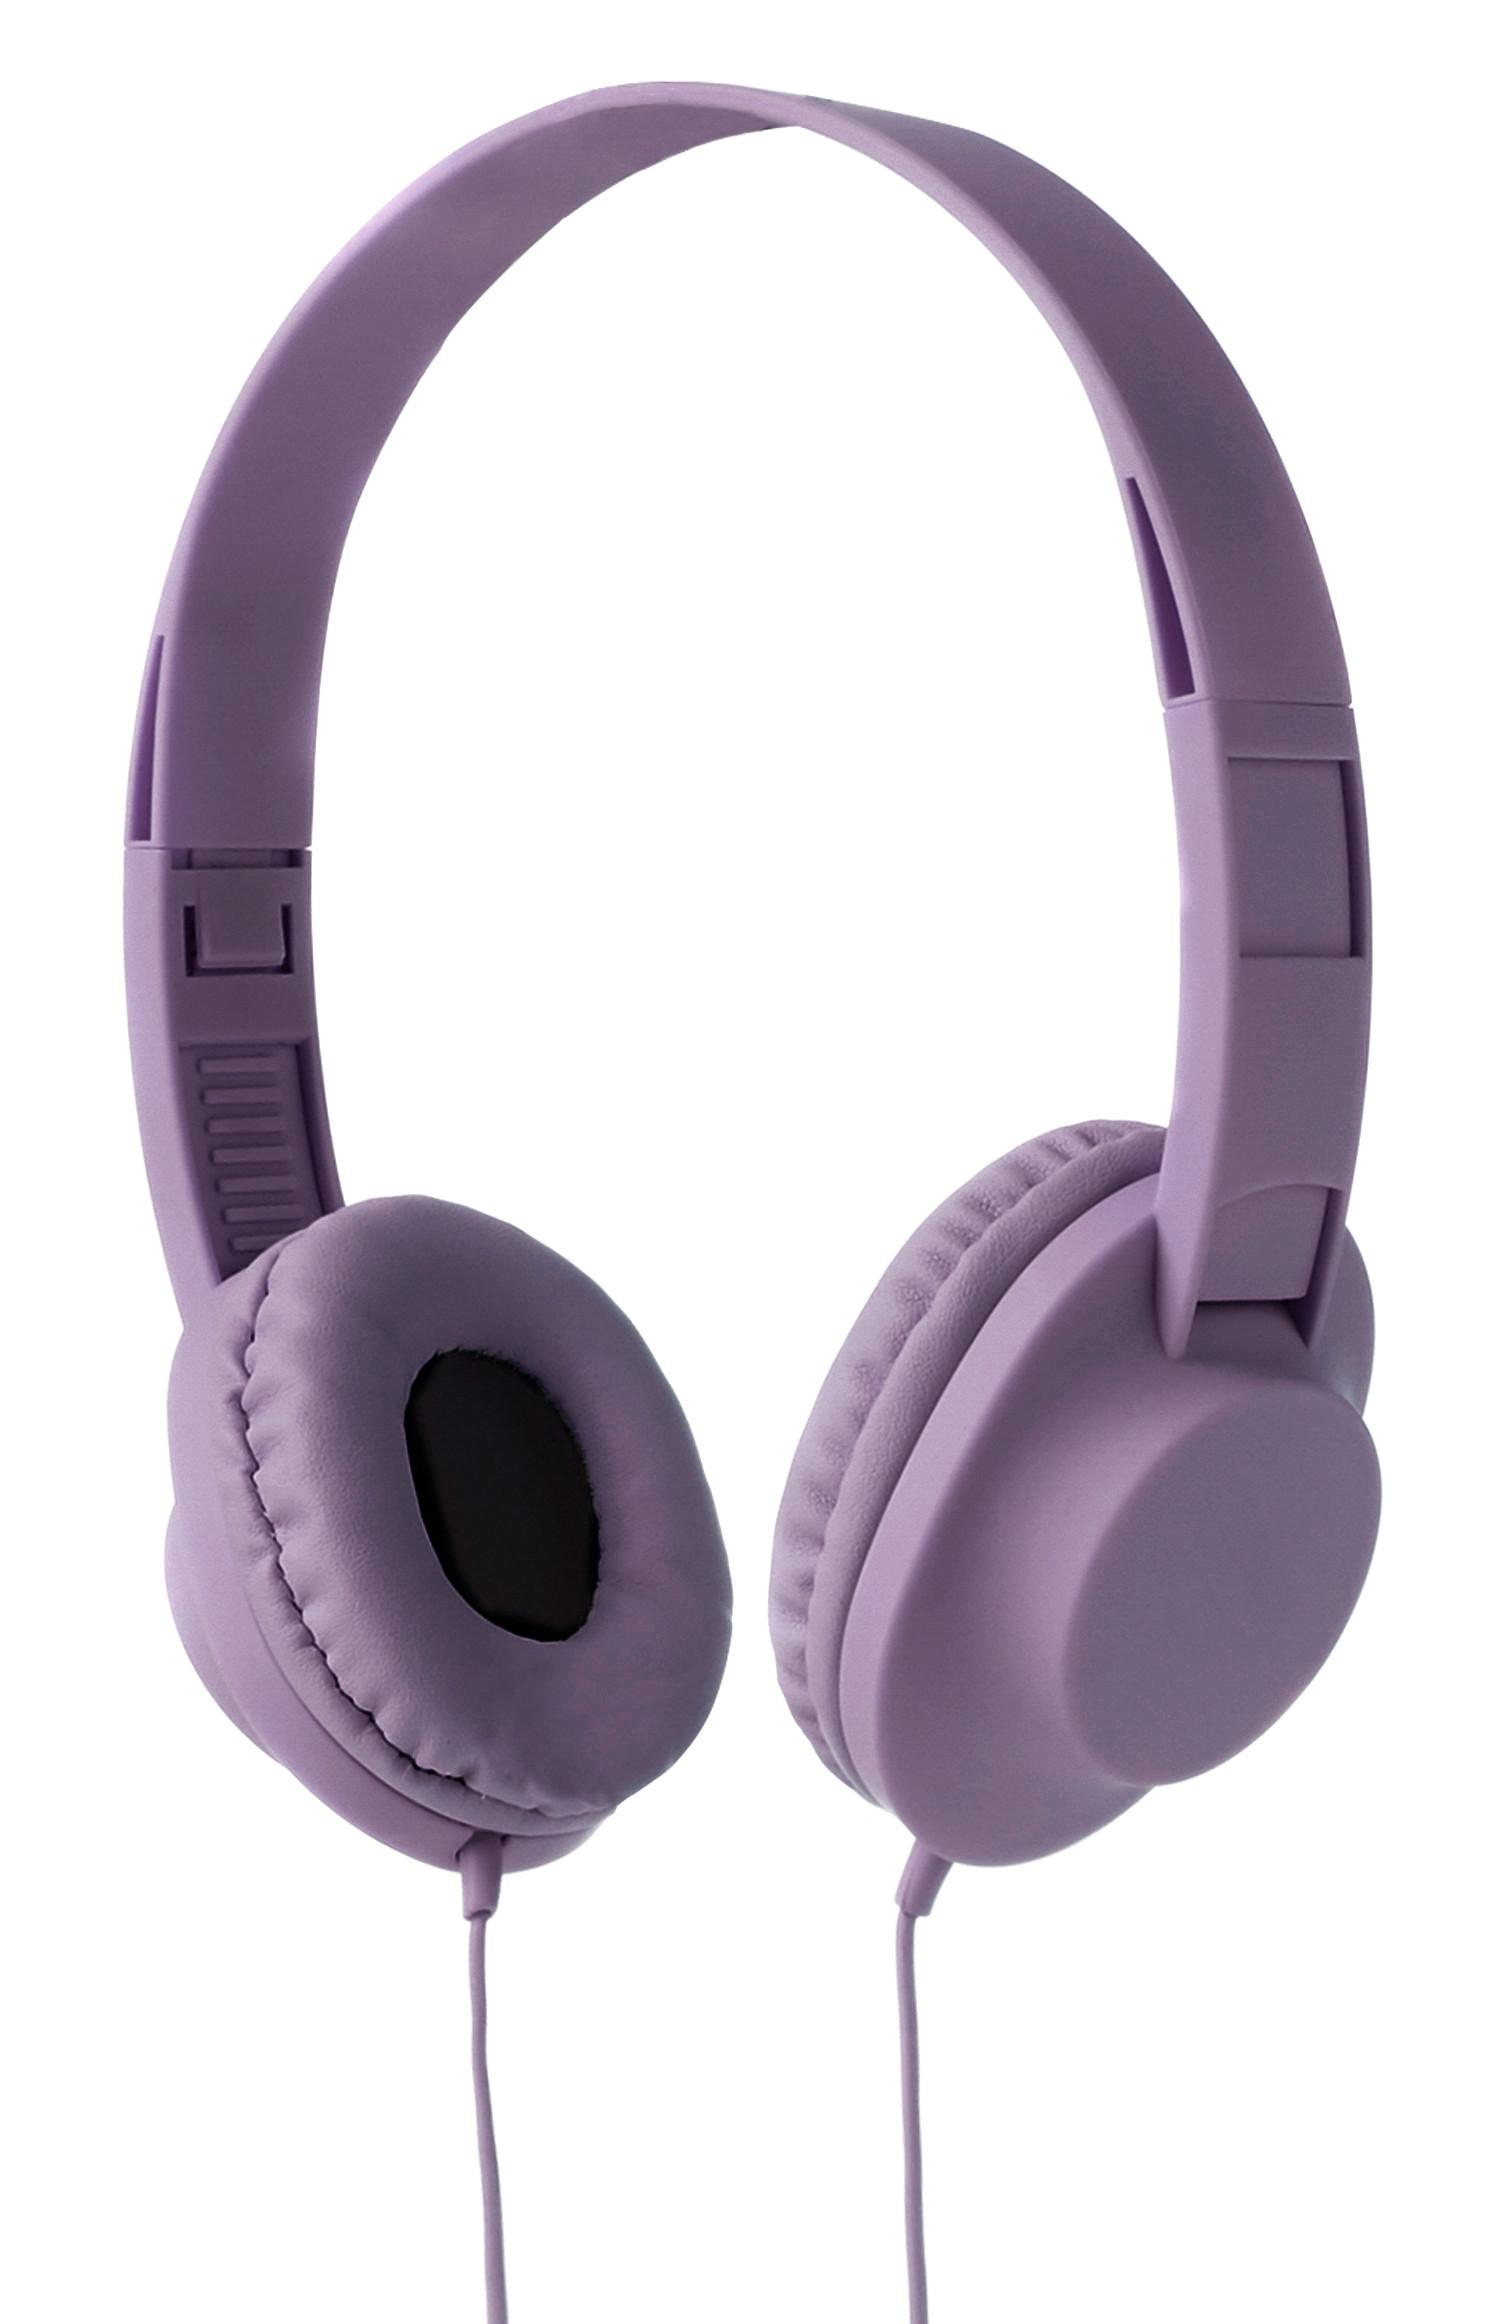 God Graden Celsius Terugbetaling Lilac Wired Headphones | Headphones & Earphones | Phone Accessories & Tech  | Homeware | All Primark Products | Penneys